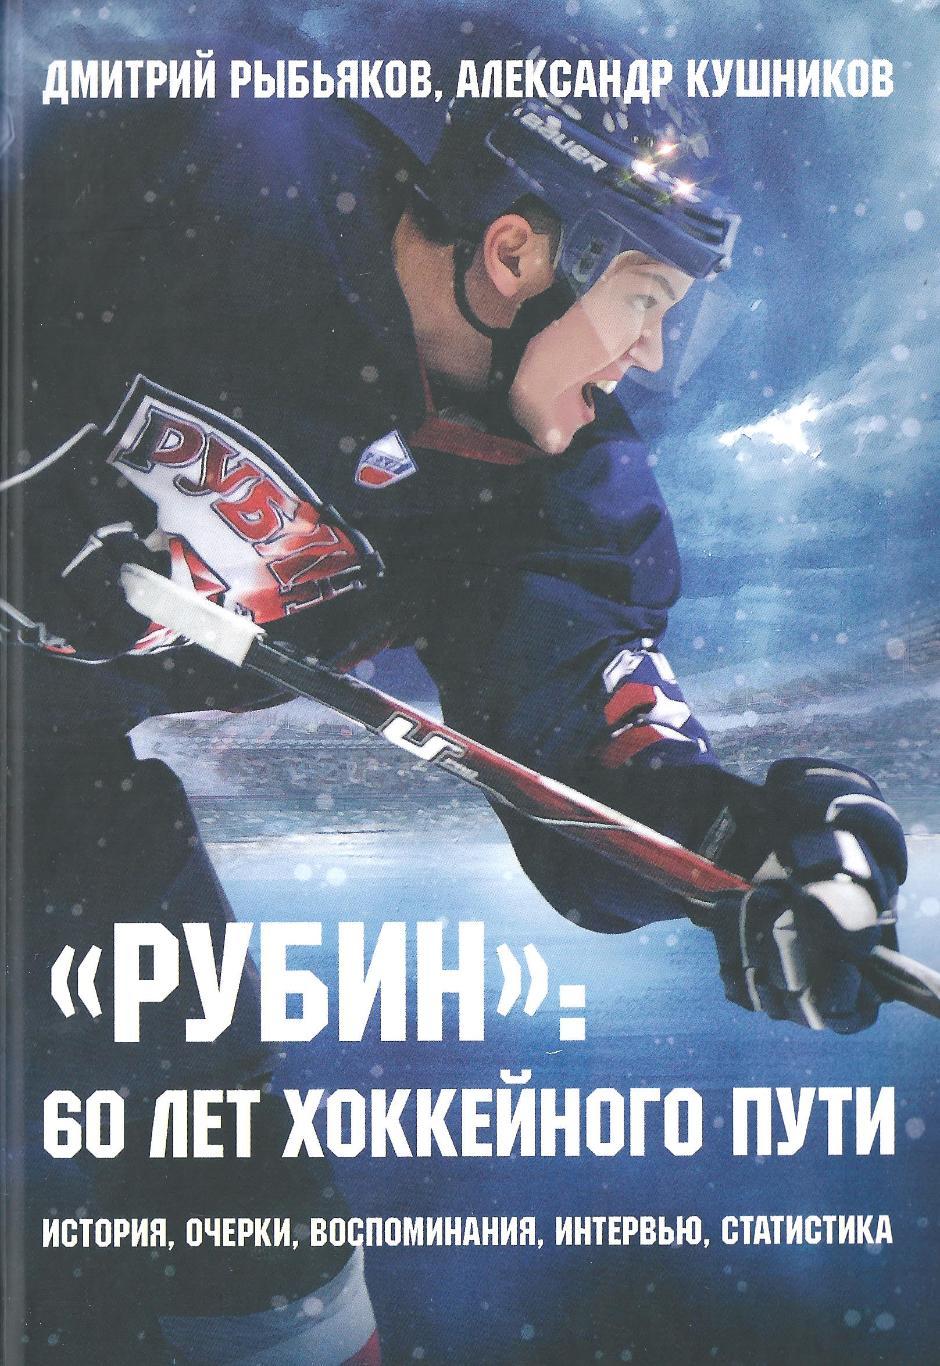 Рыбьяков, Кушников - Рубин: 60 лет хоккейного пути